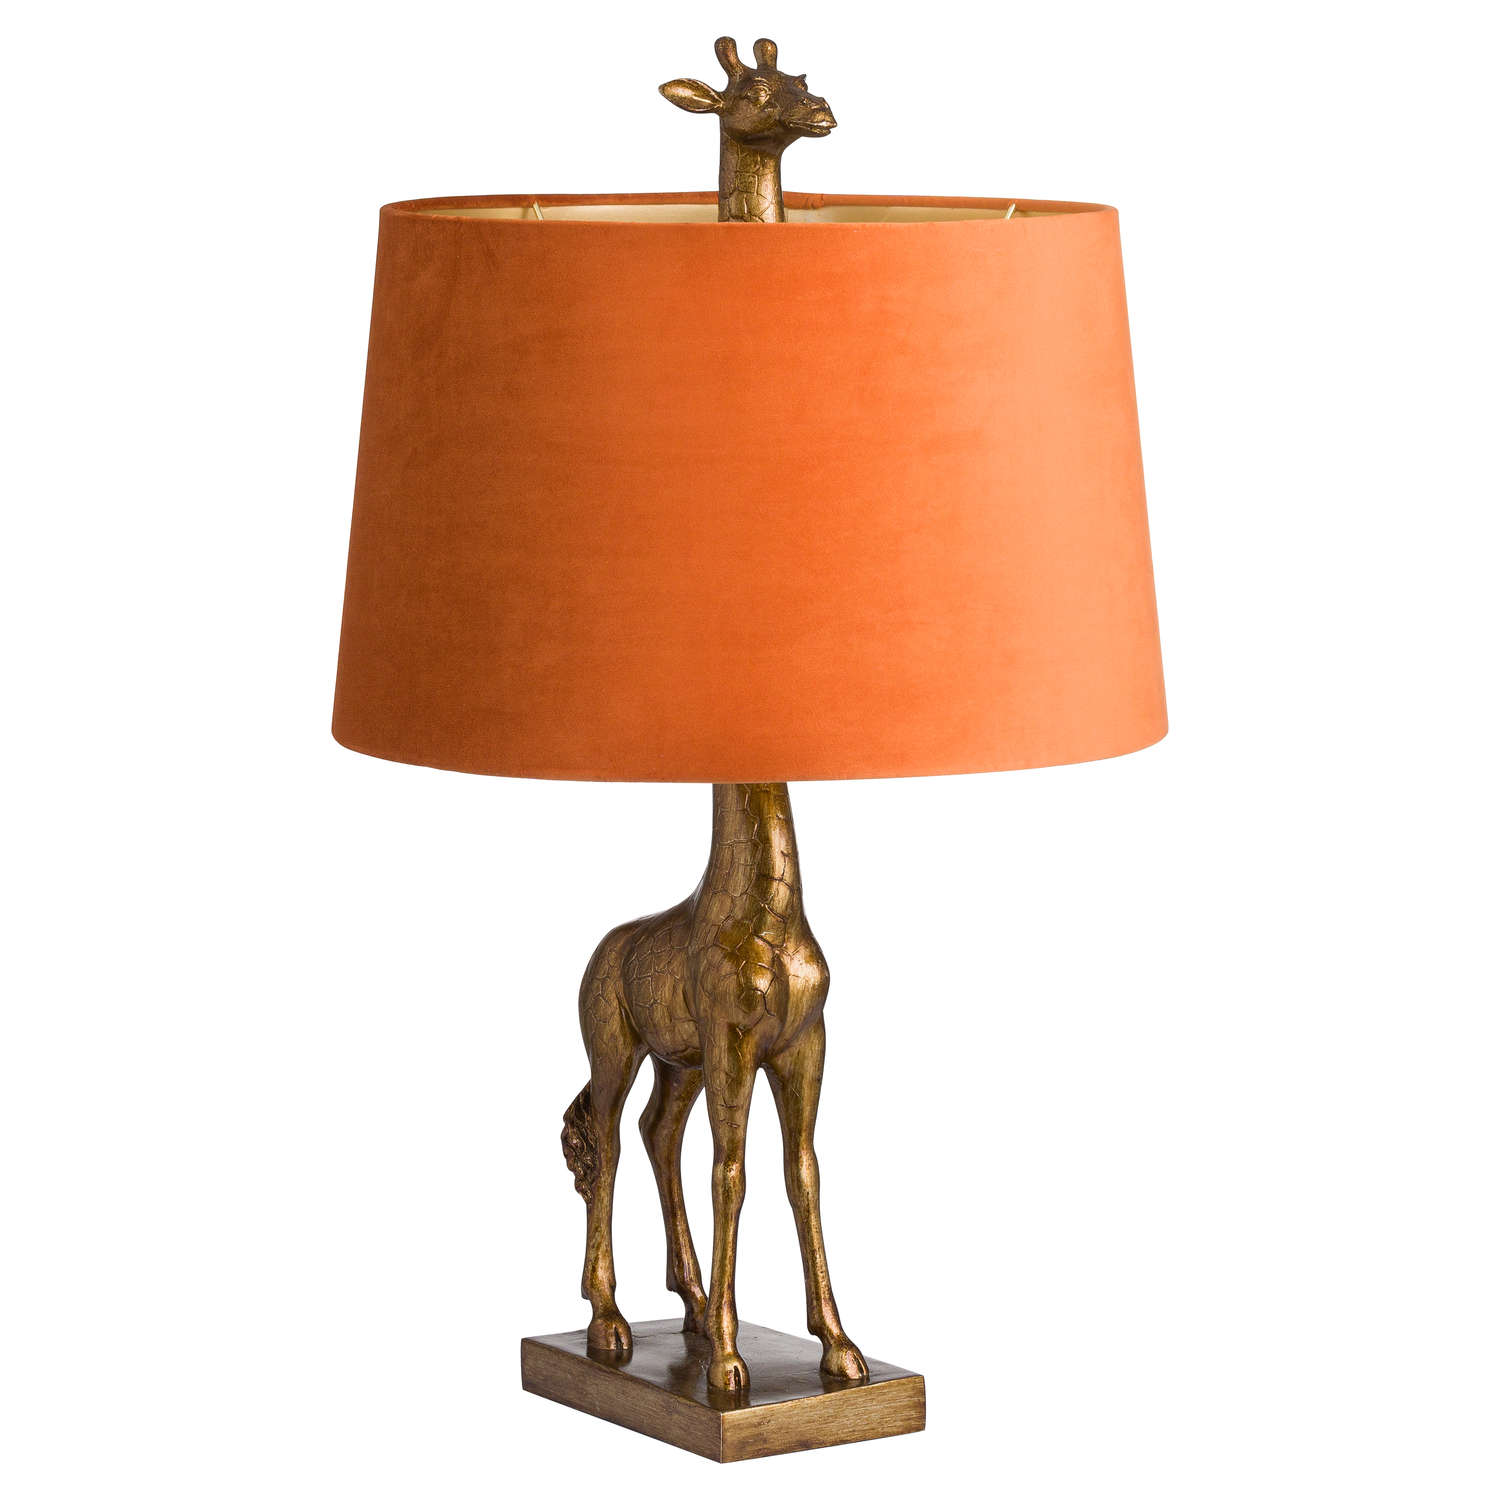 Antique Gold Giraffe Lamp With Burnt Orange Velvet Shade - Image 1